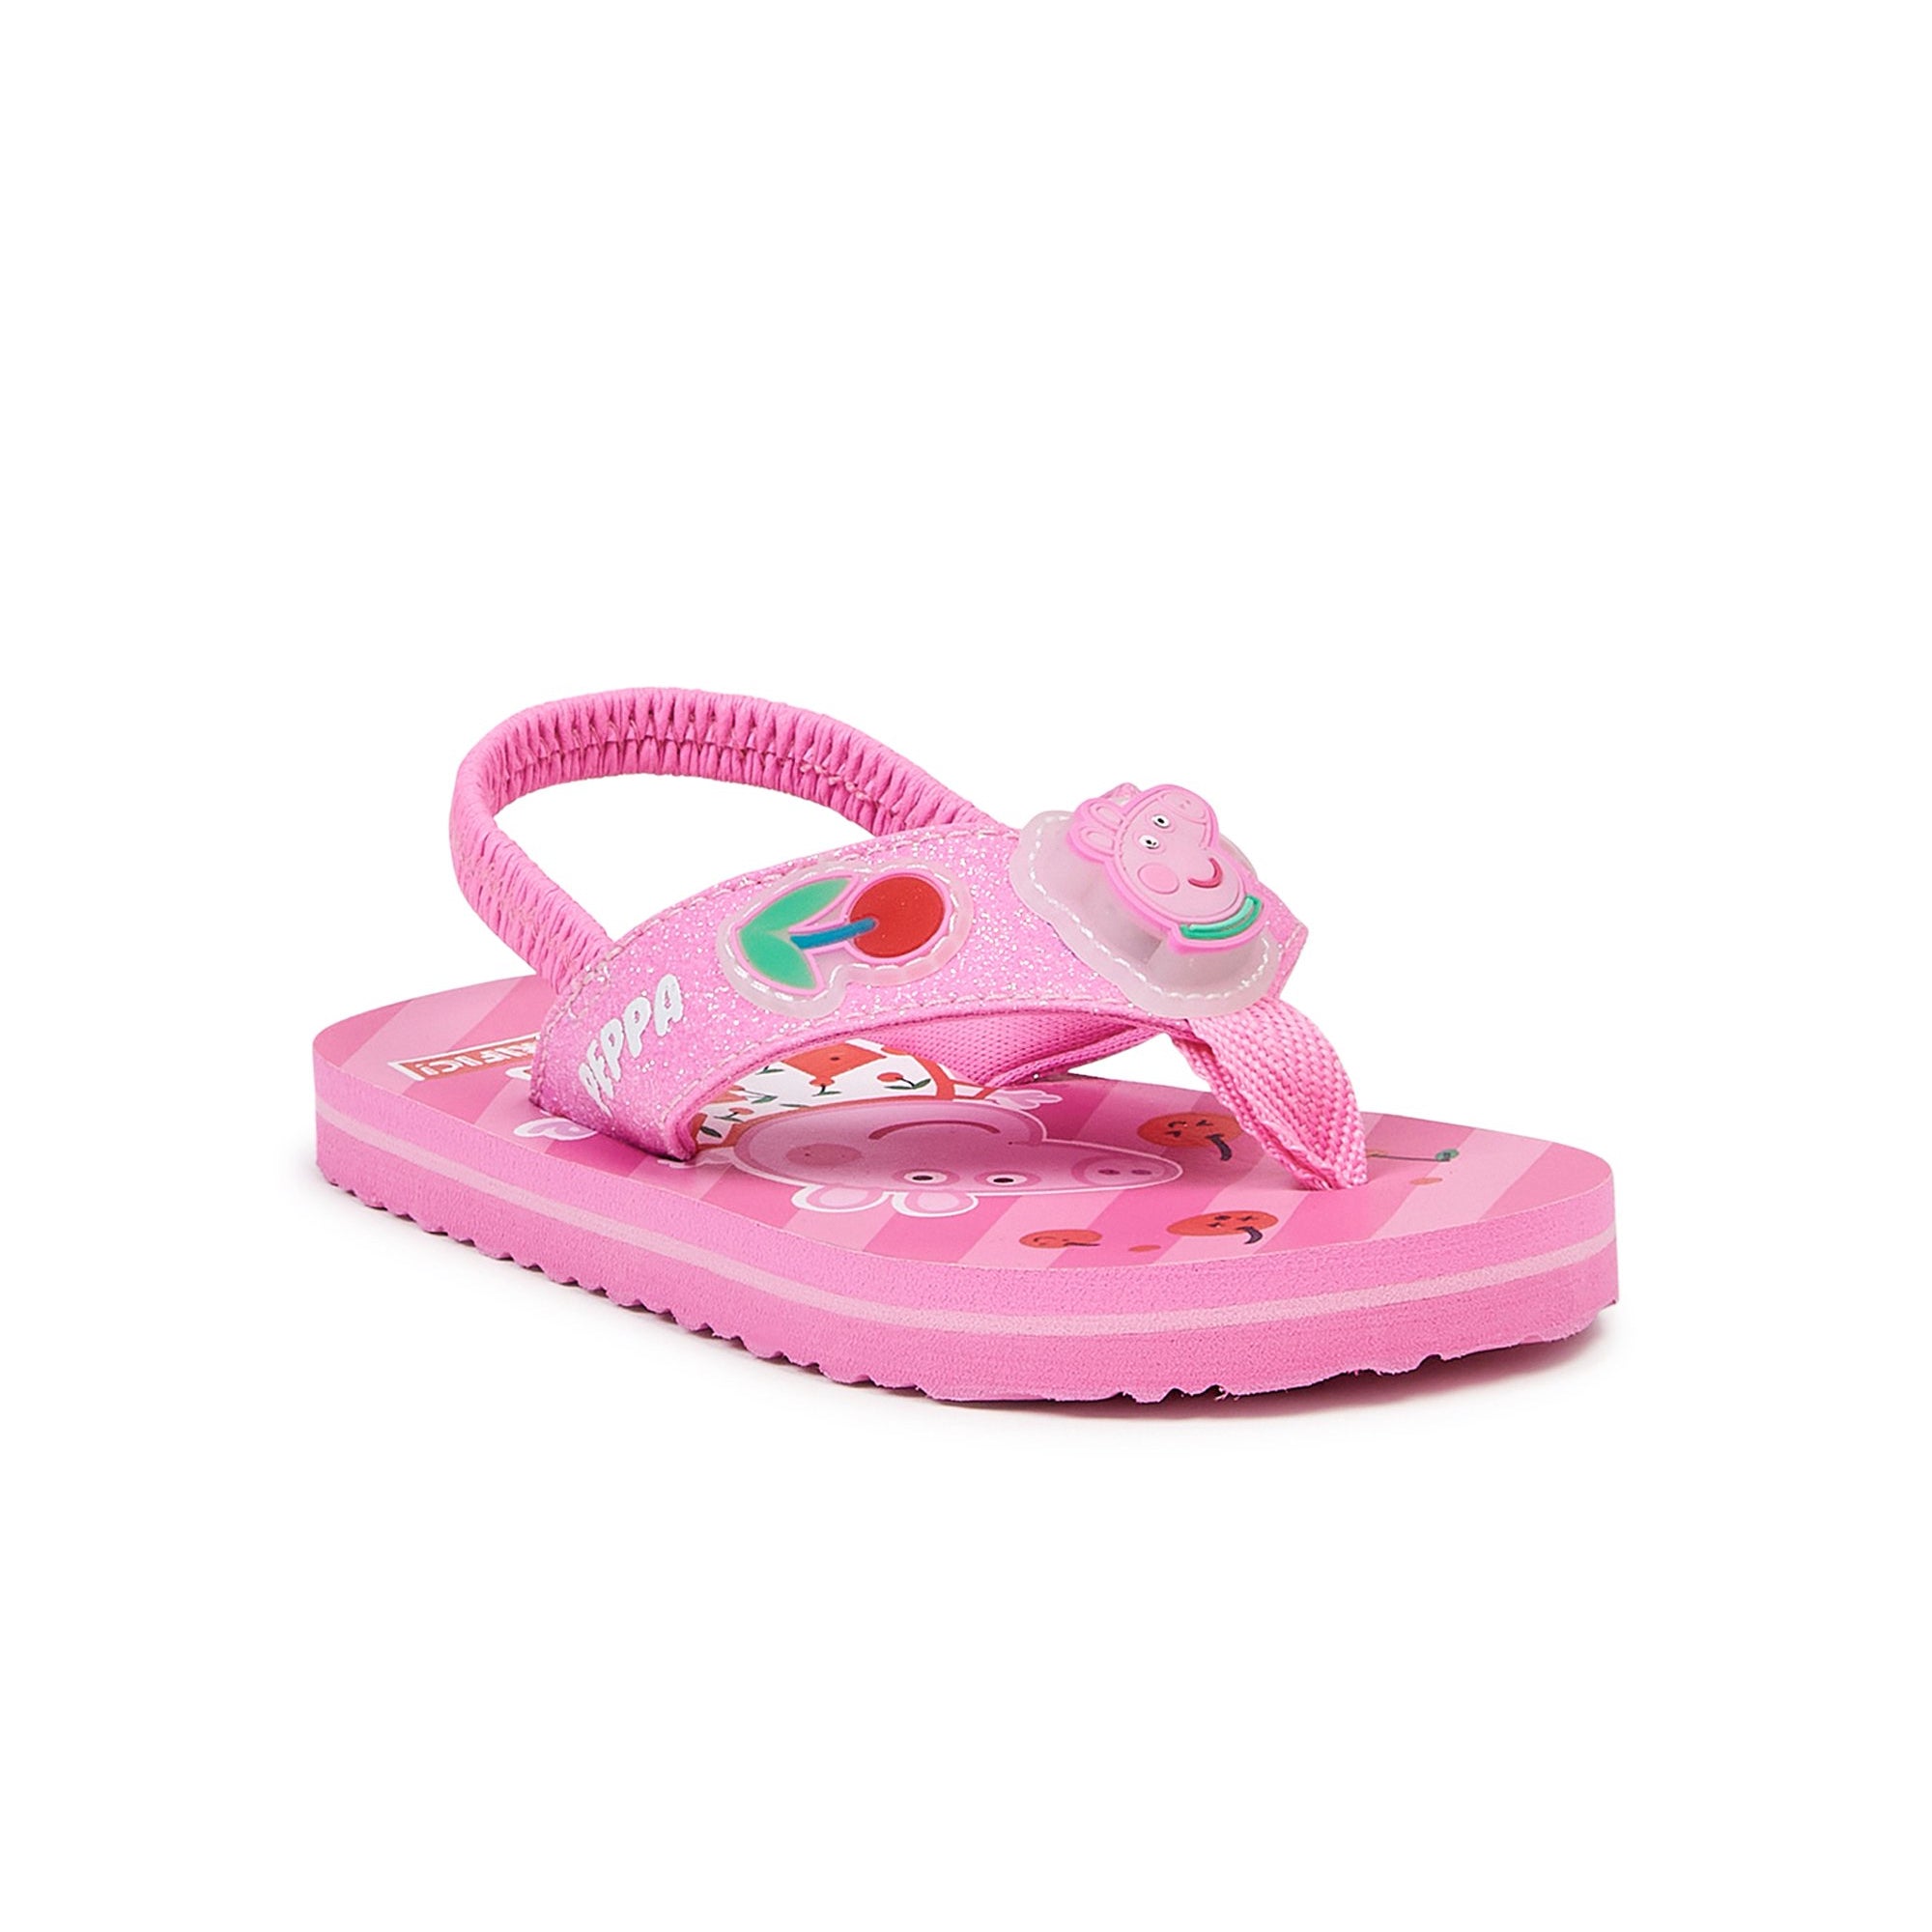 Peppa Pig Girls Flip Flops Pink Toddler Girl Sandals - FPI Ventures